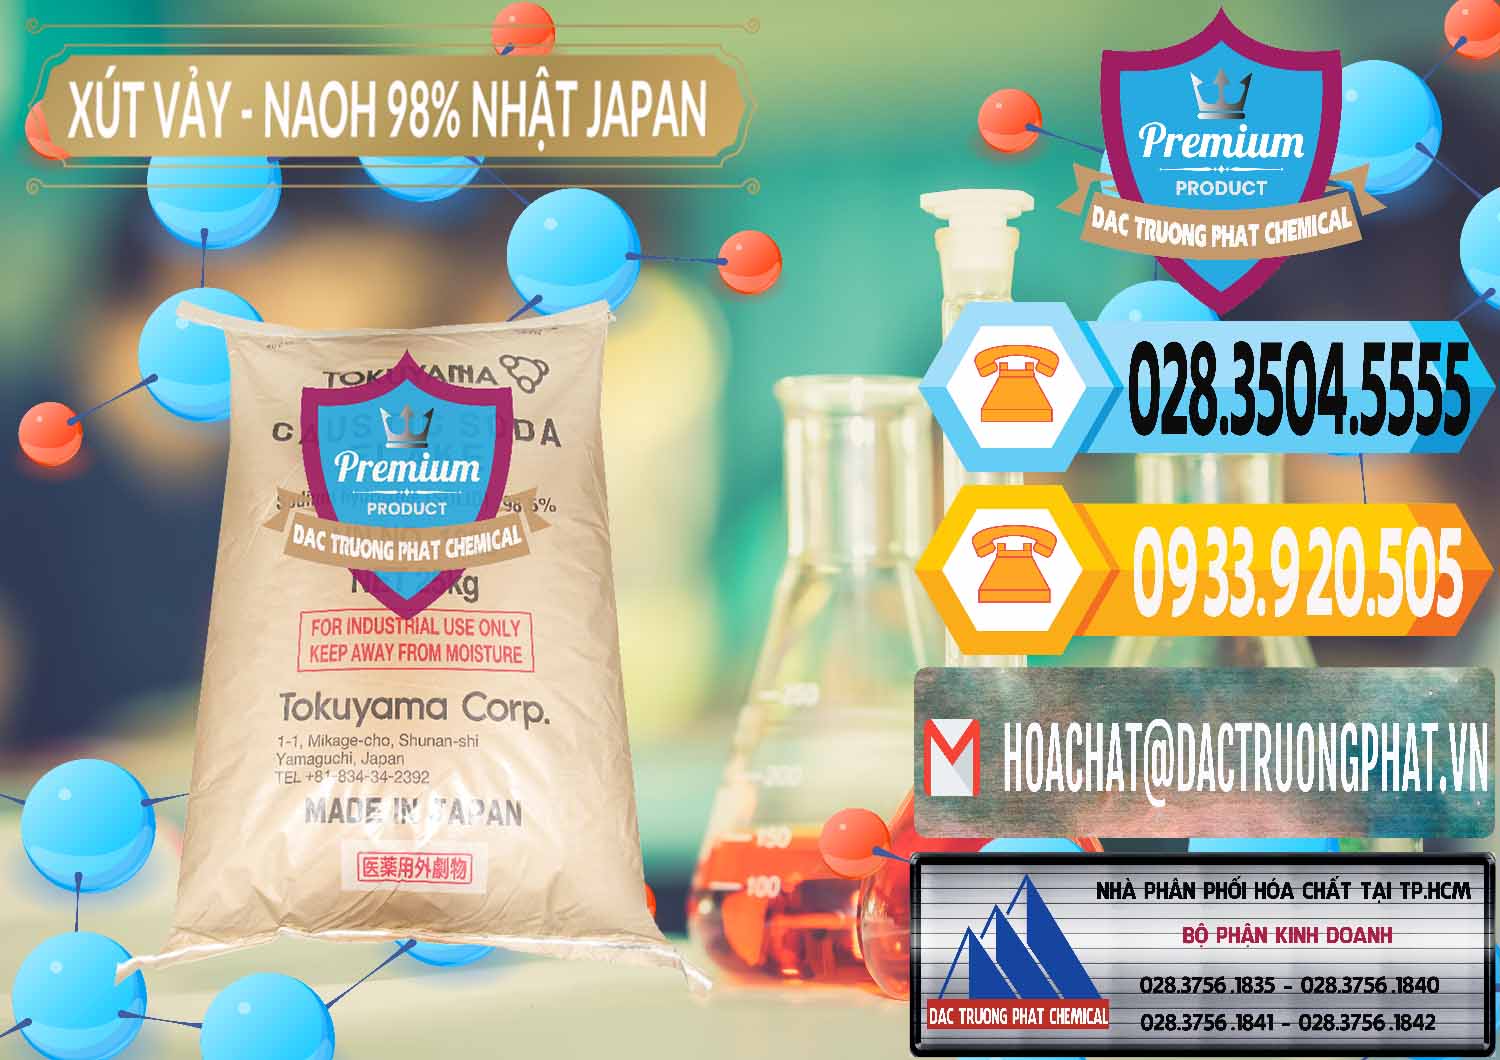 Đơn vị chuyên kinh doanh & bán Xút Vảy - NaOH Vảy 98% Tokuyama Nhật Bản Japan - 0173 - Cty phân phối ( bán ) hóa chất tại TP.HCM - hoachattayrua.net